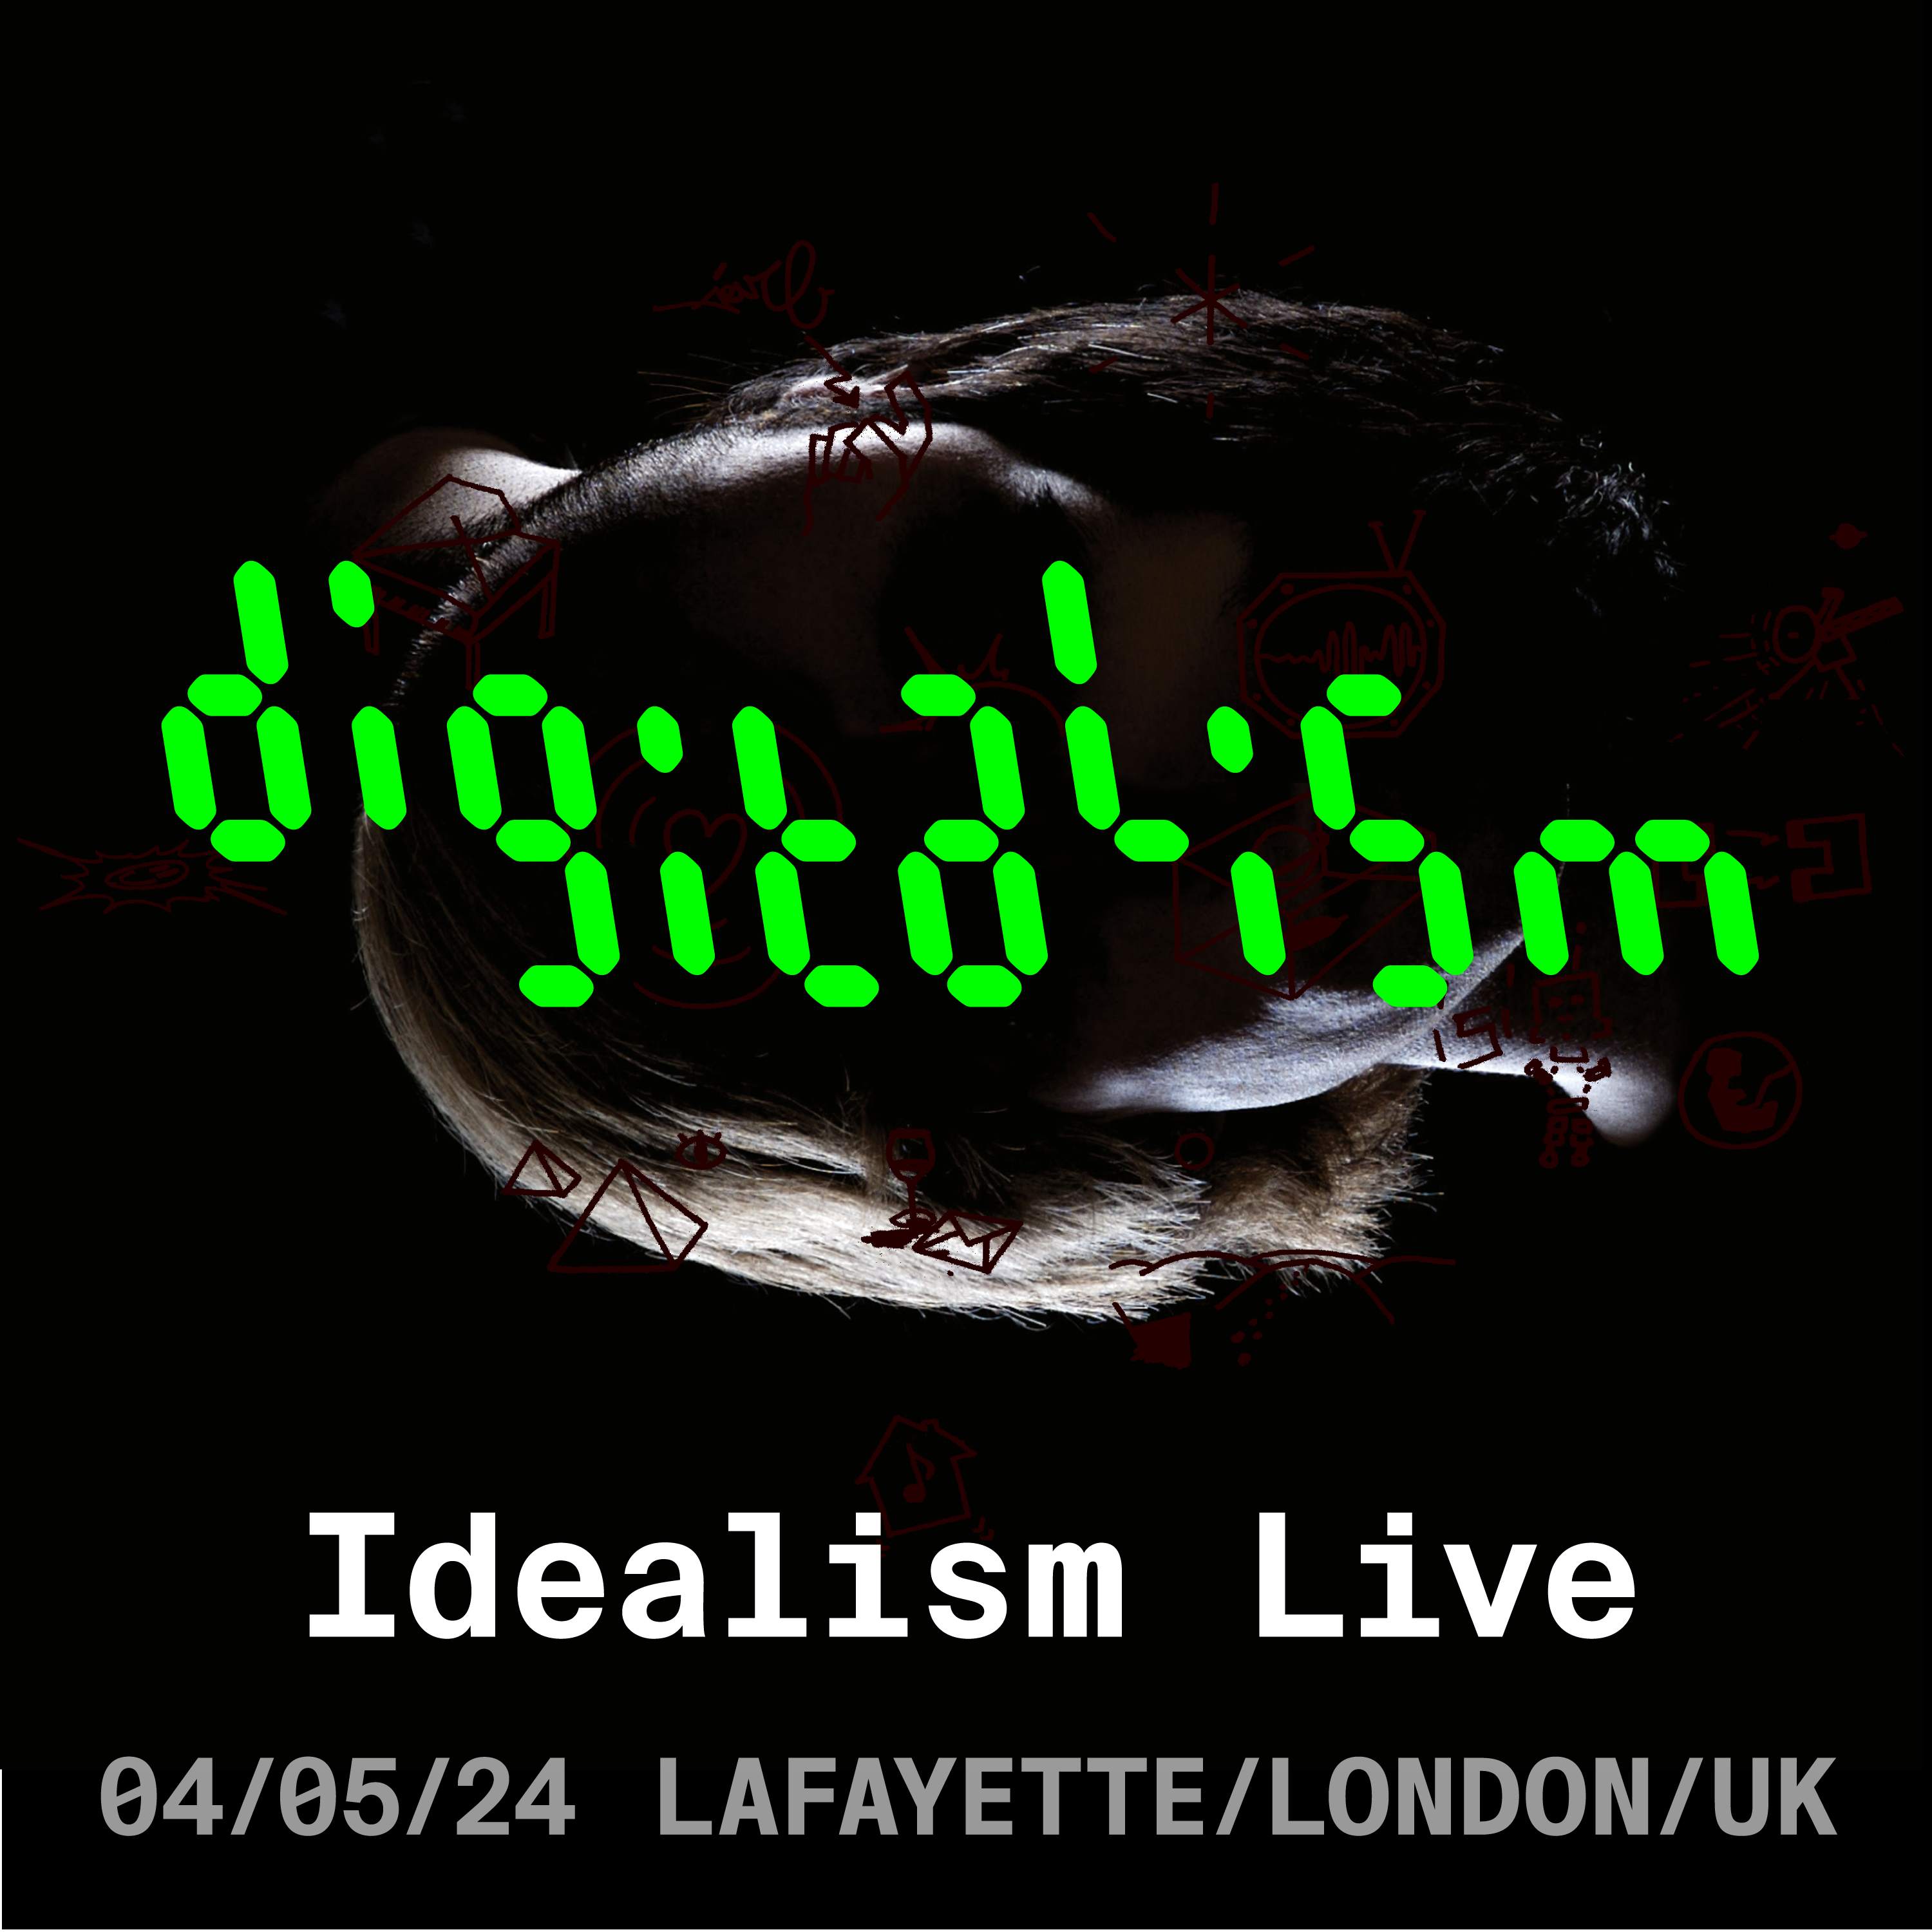 Digitalism - Idealism Live - Página frontal